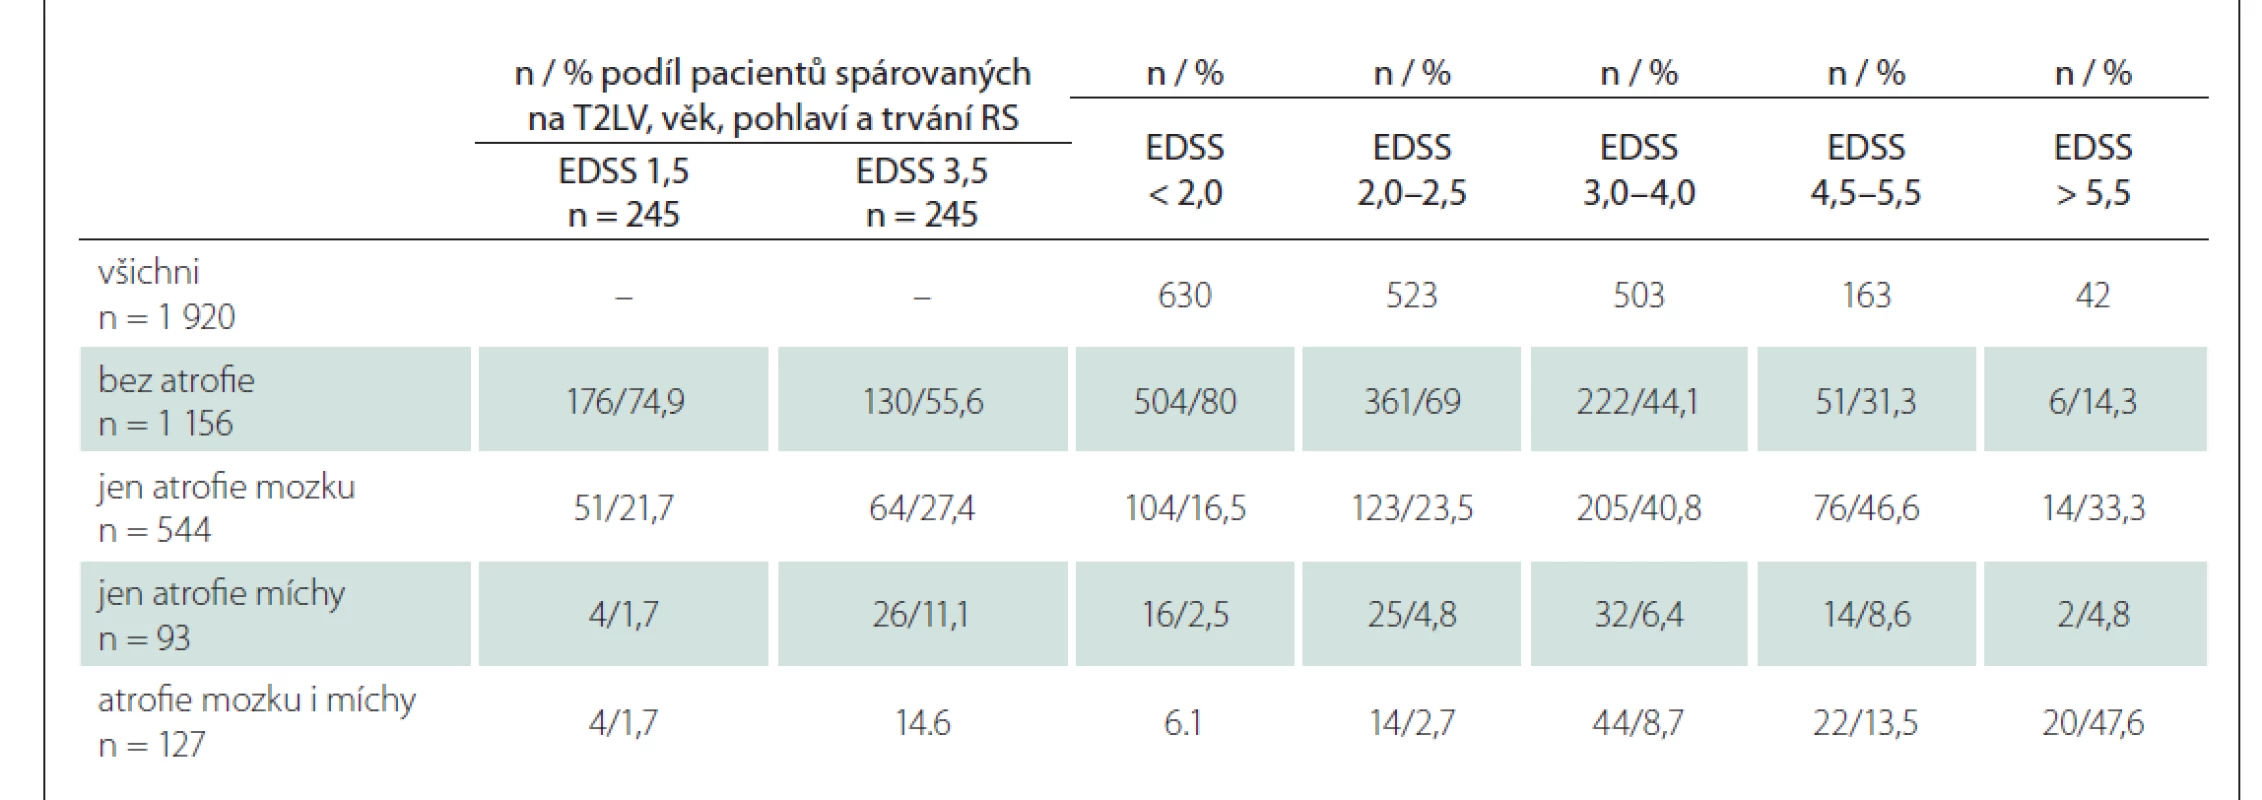 Podíl pacientů bez atrofie / s atrofií mozku a/nebo míchy v jednotlivých skupinách dle EDSS.